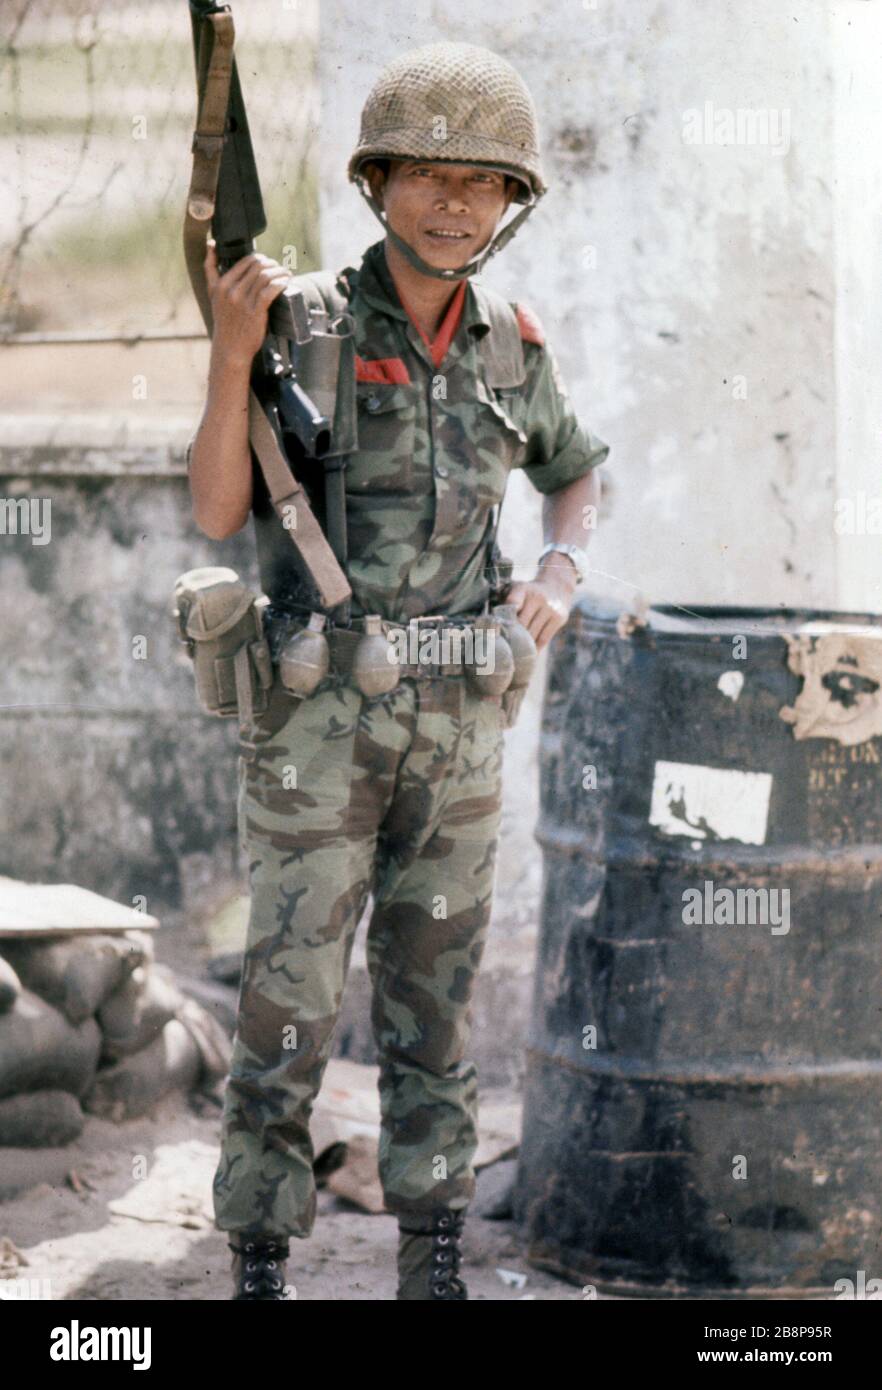 1968, Danang, Vietnam, authentisches Foto eines südvietnamesischen Soldaten, der in Vietnam eine Waffe neben Trommeln mit Chemikalien hält Stockfoto